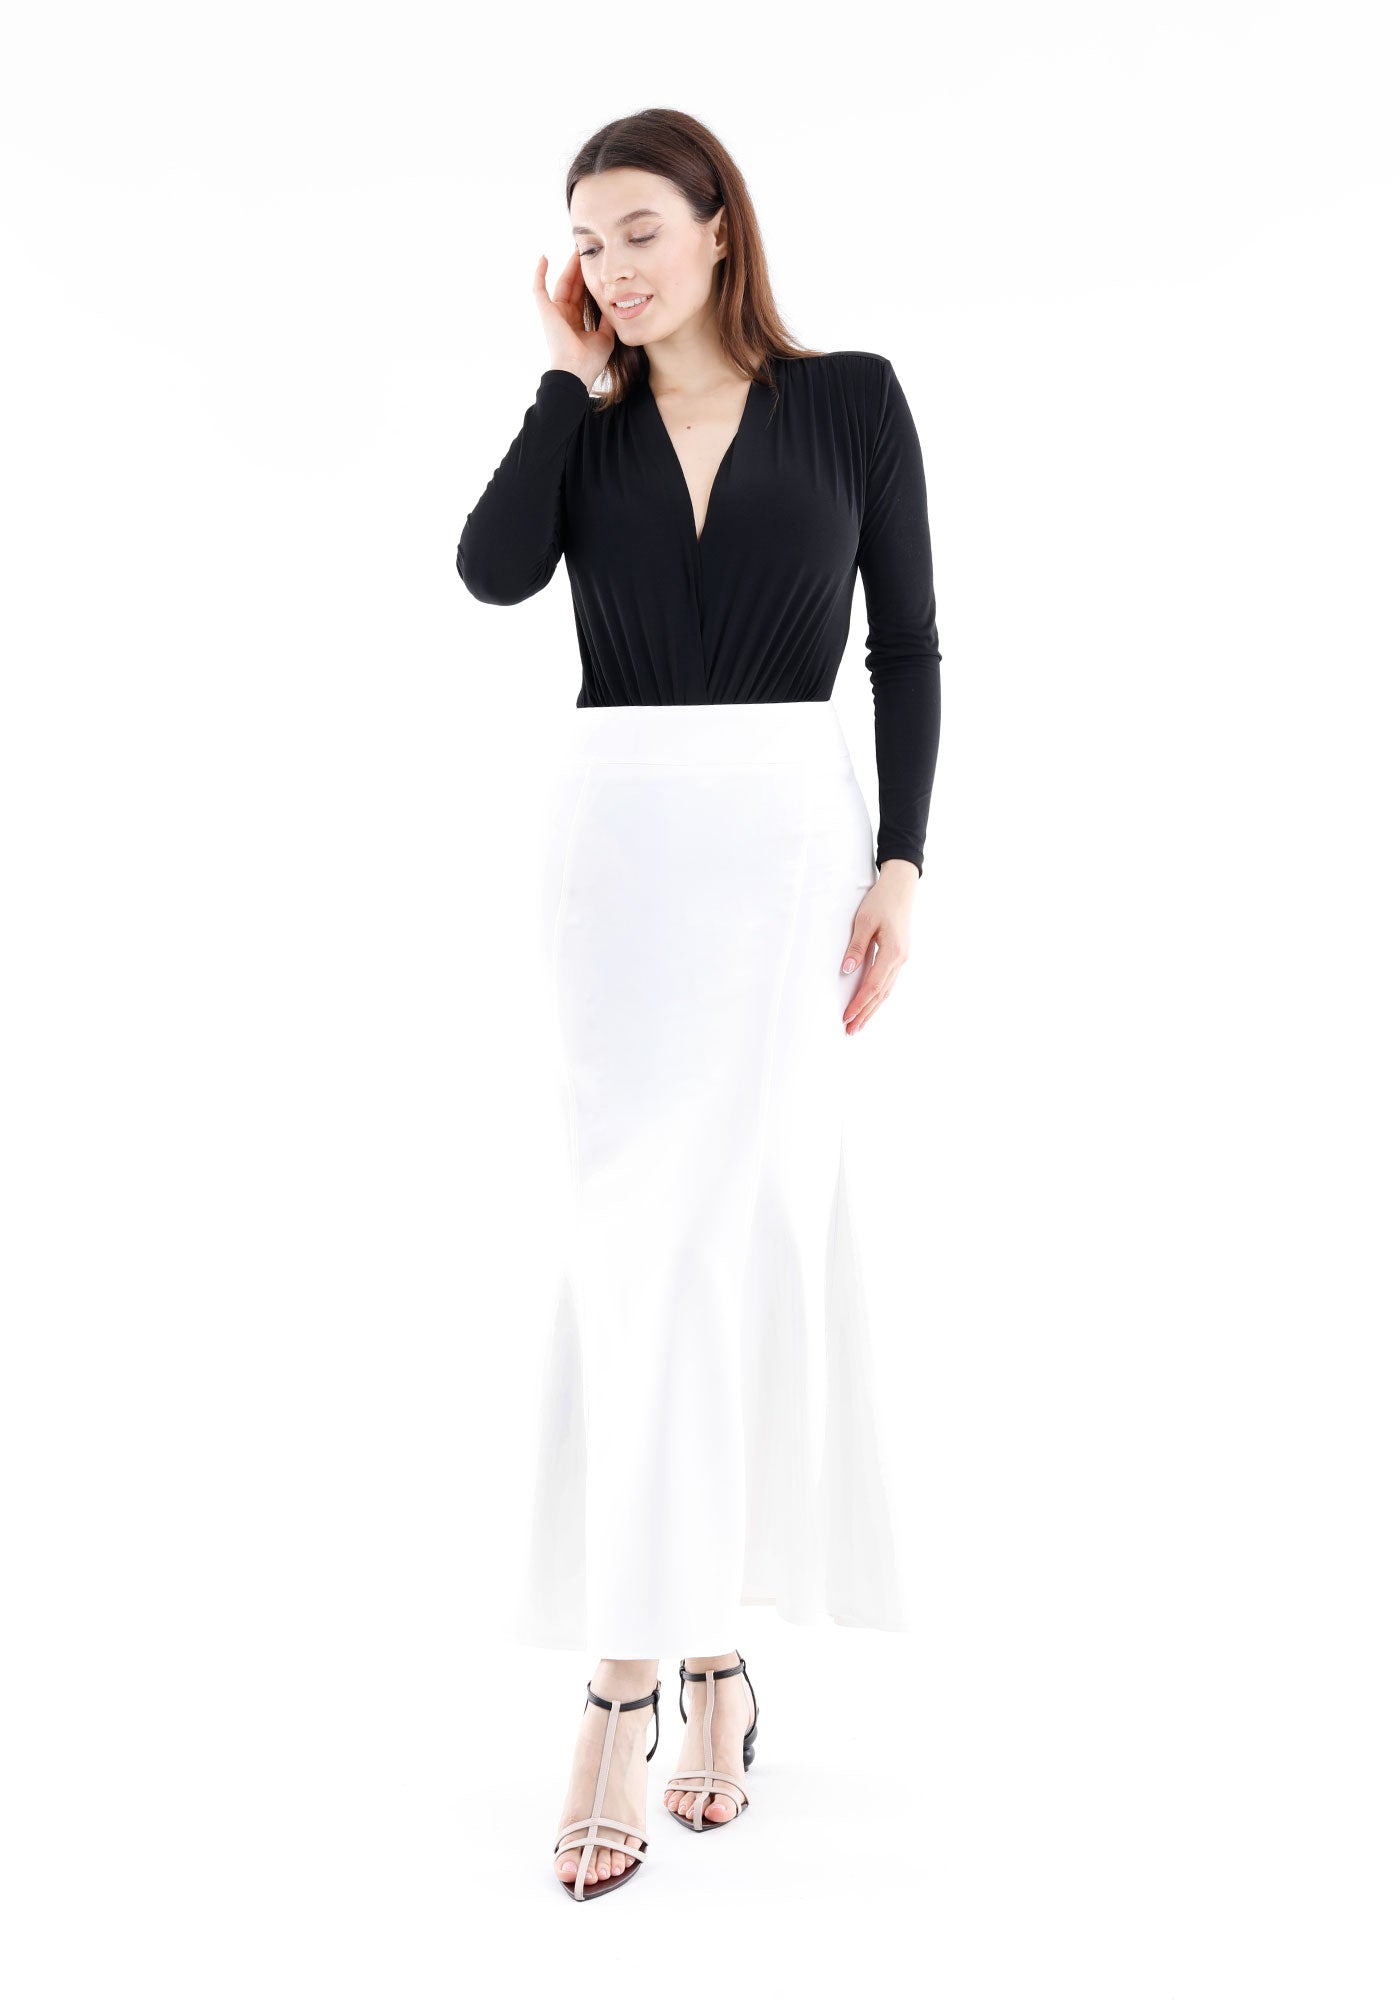 White Fishtail Maxi Skirt G-Line